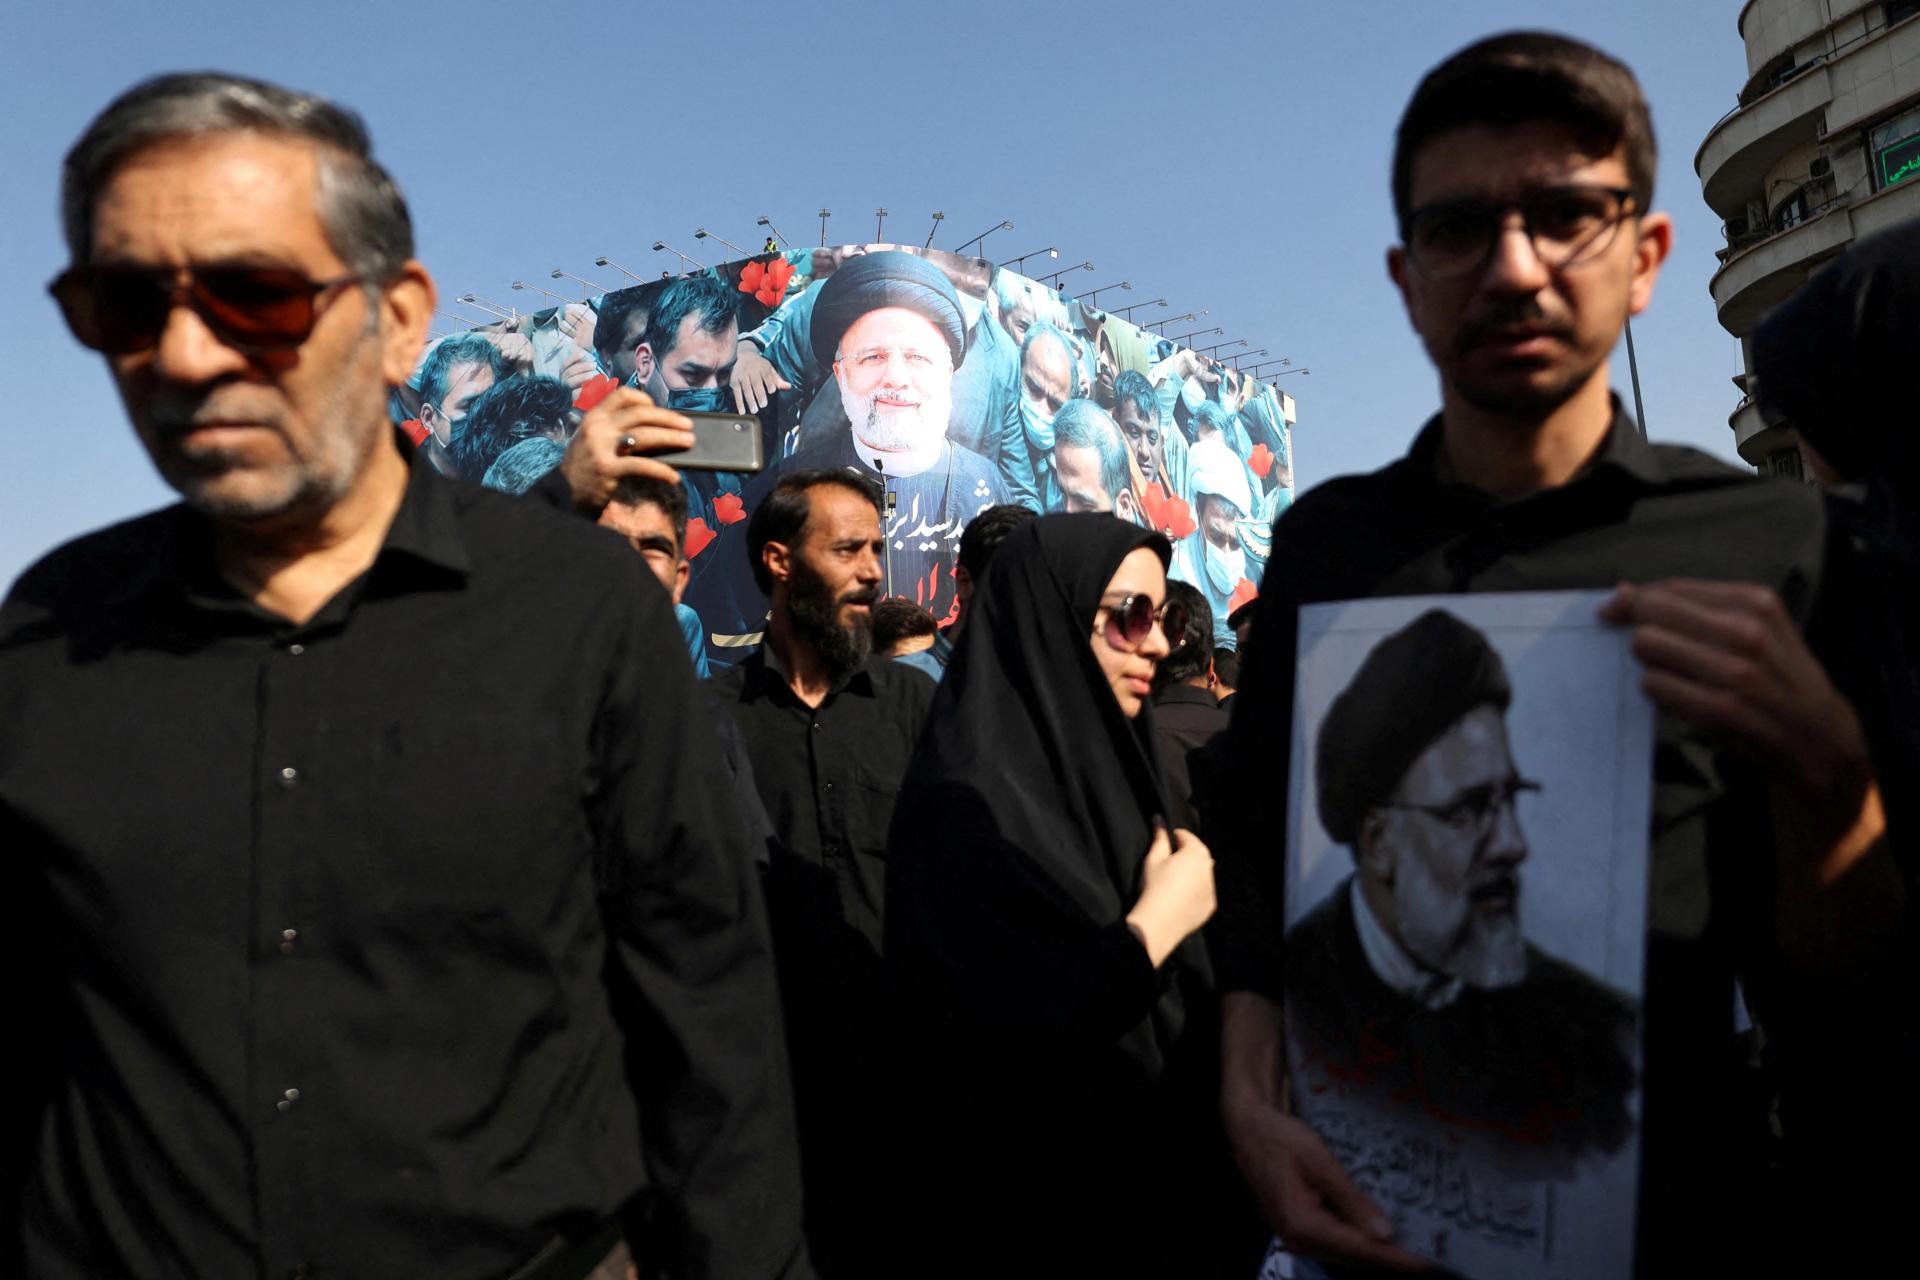 Vrtuľník sa vznietil po náraze. Pri vyšetrovaní havárie iránskeho prezidenta nenašli nič podozrivé